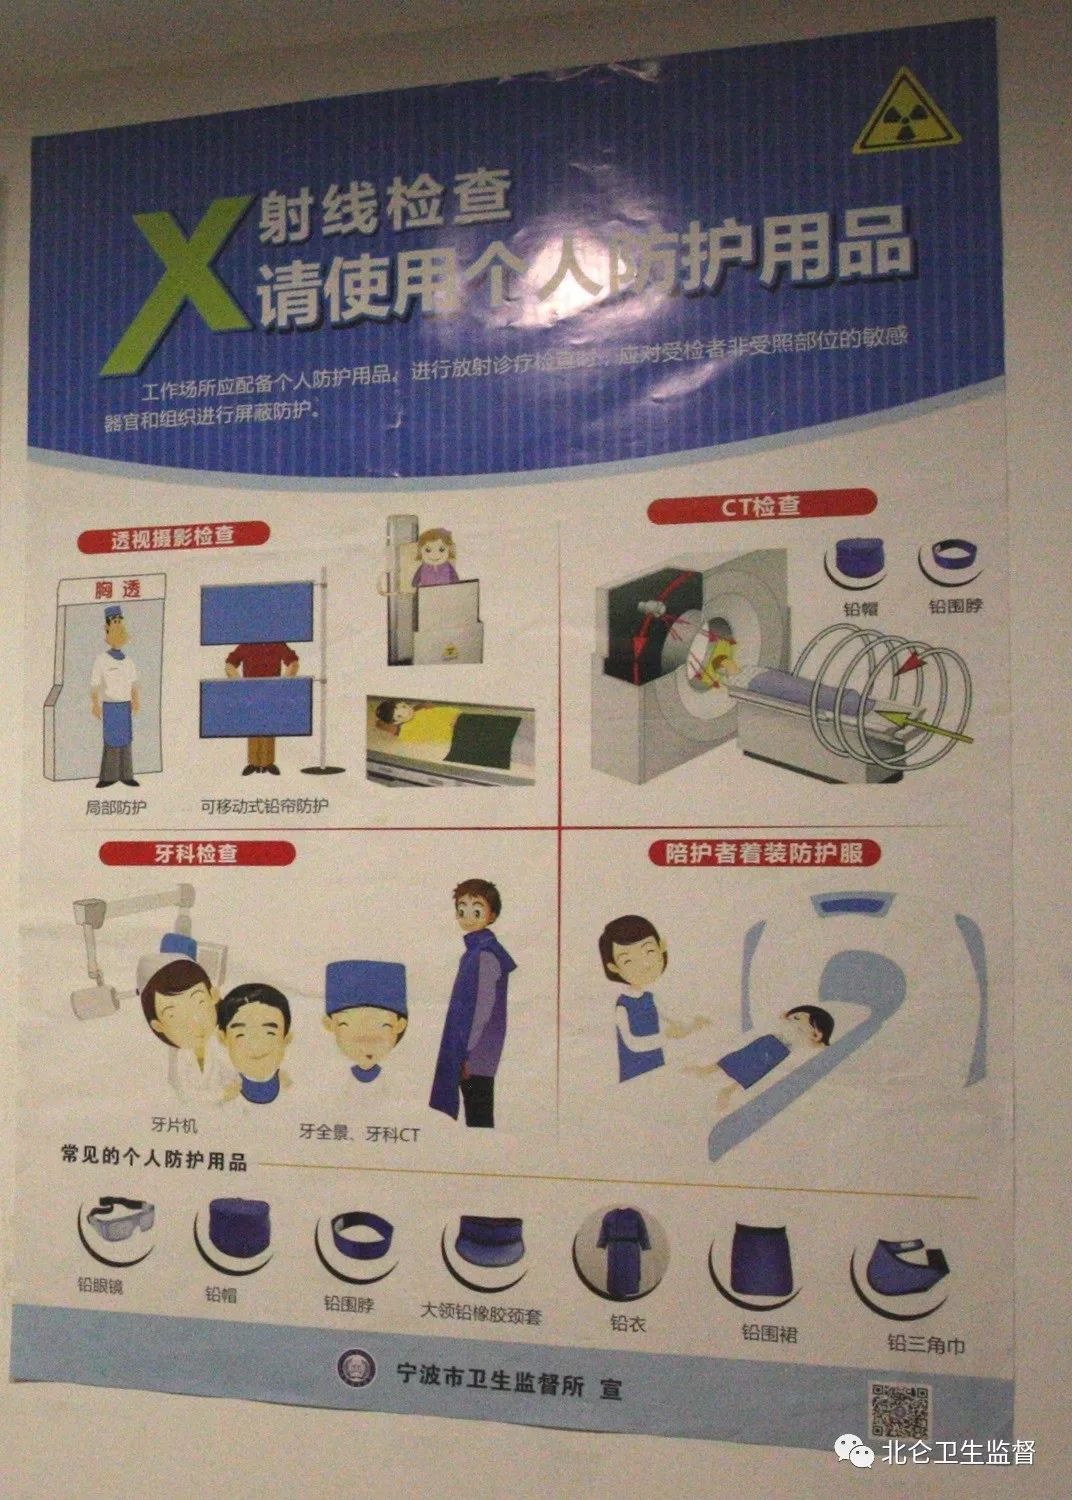 注意x线机房内放置与检查无关的物品将会受到处罚